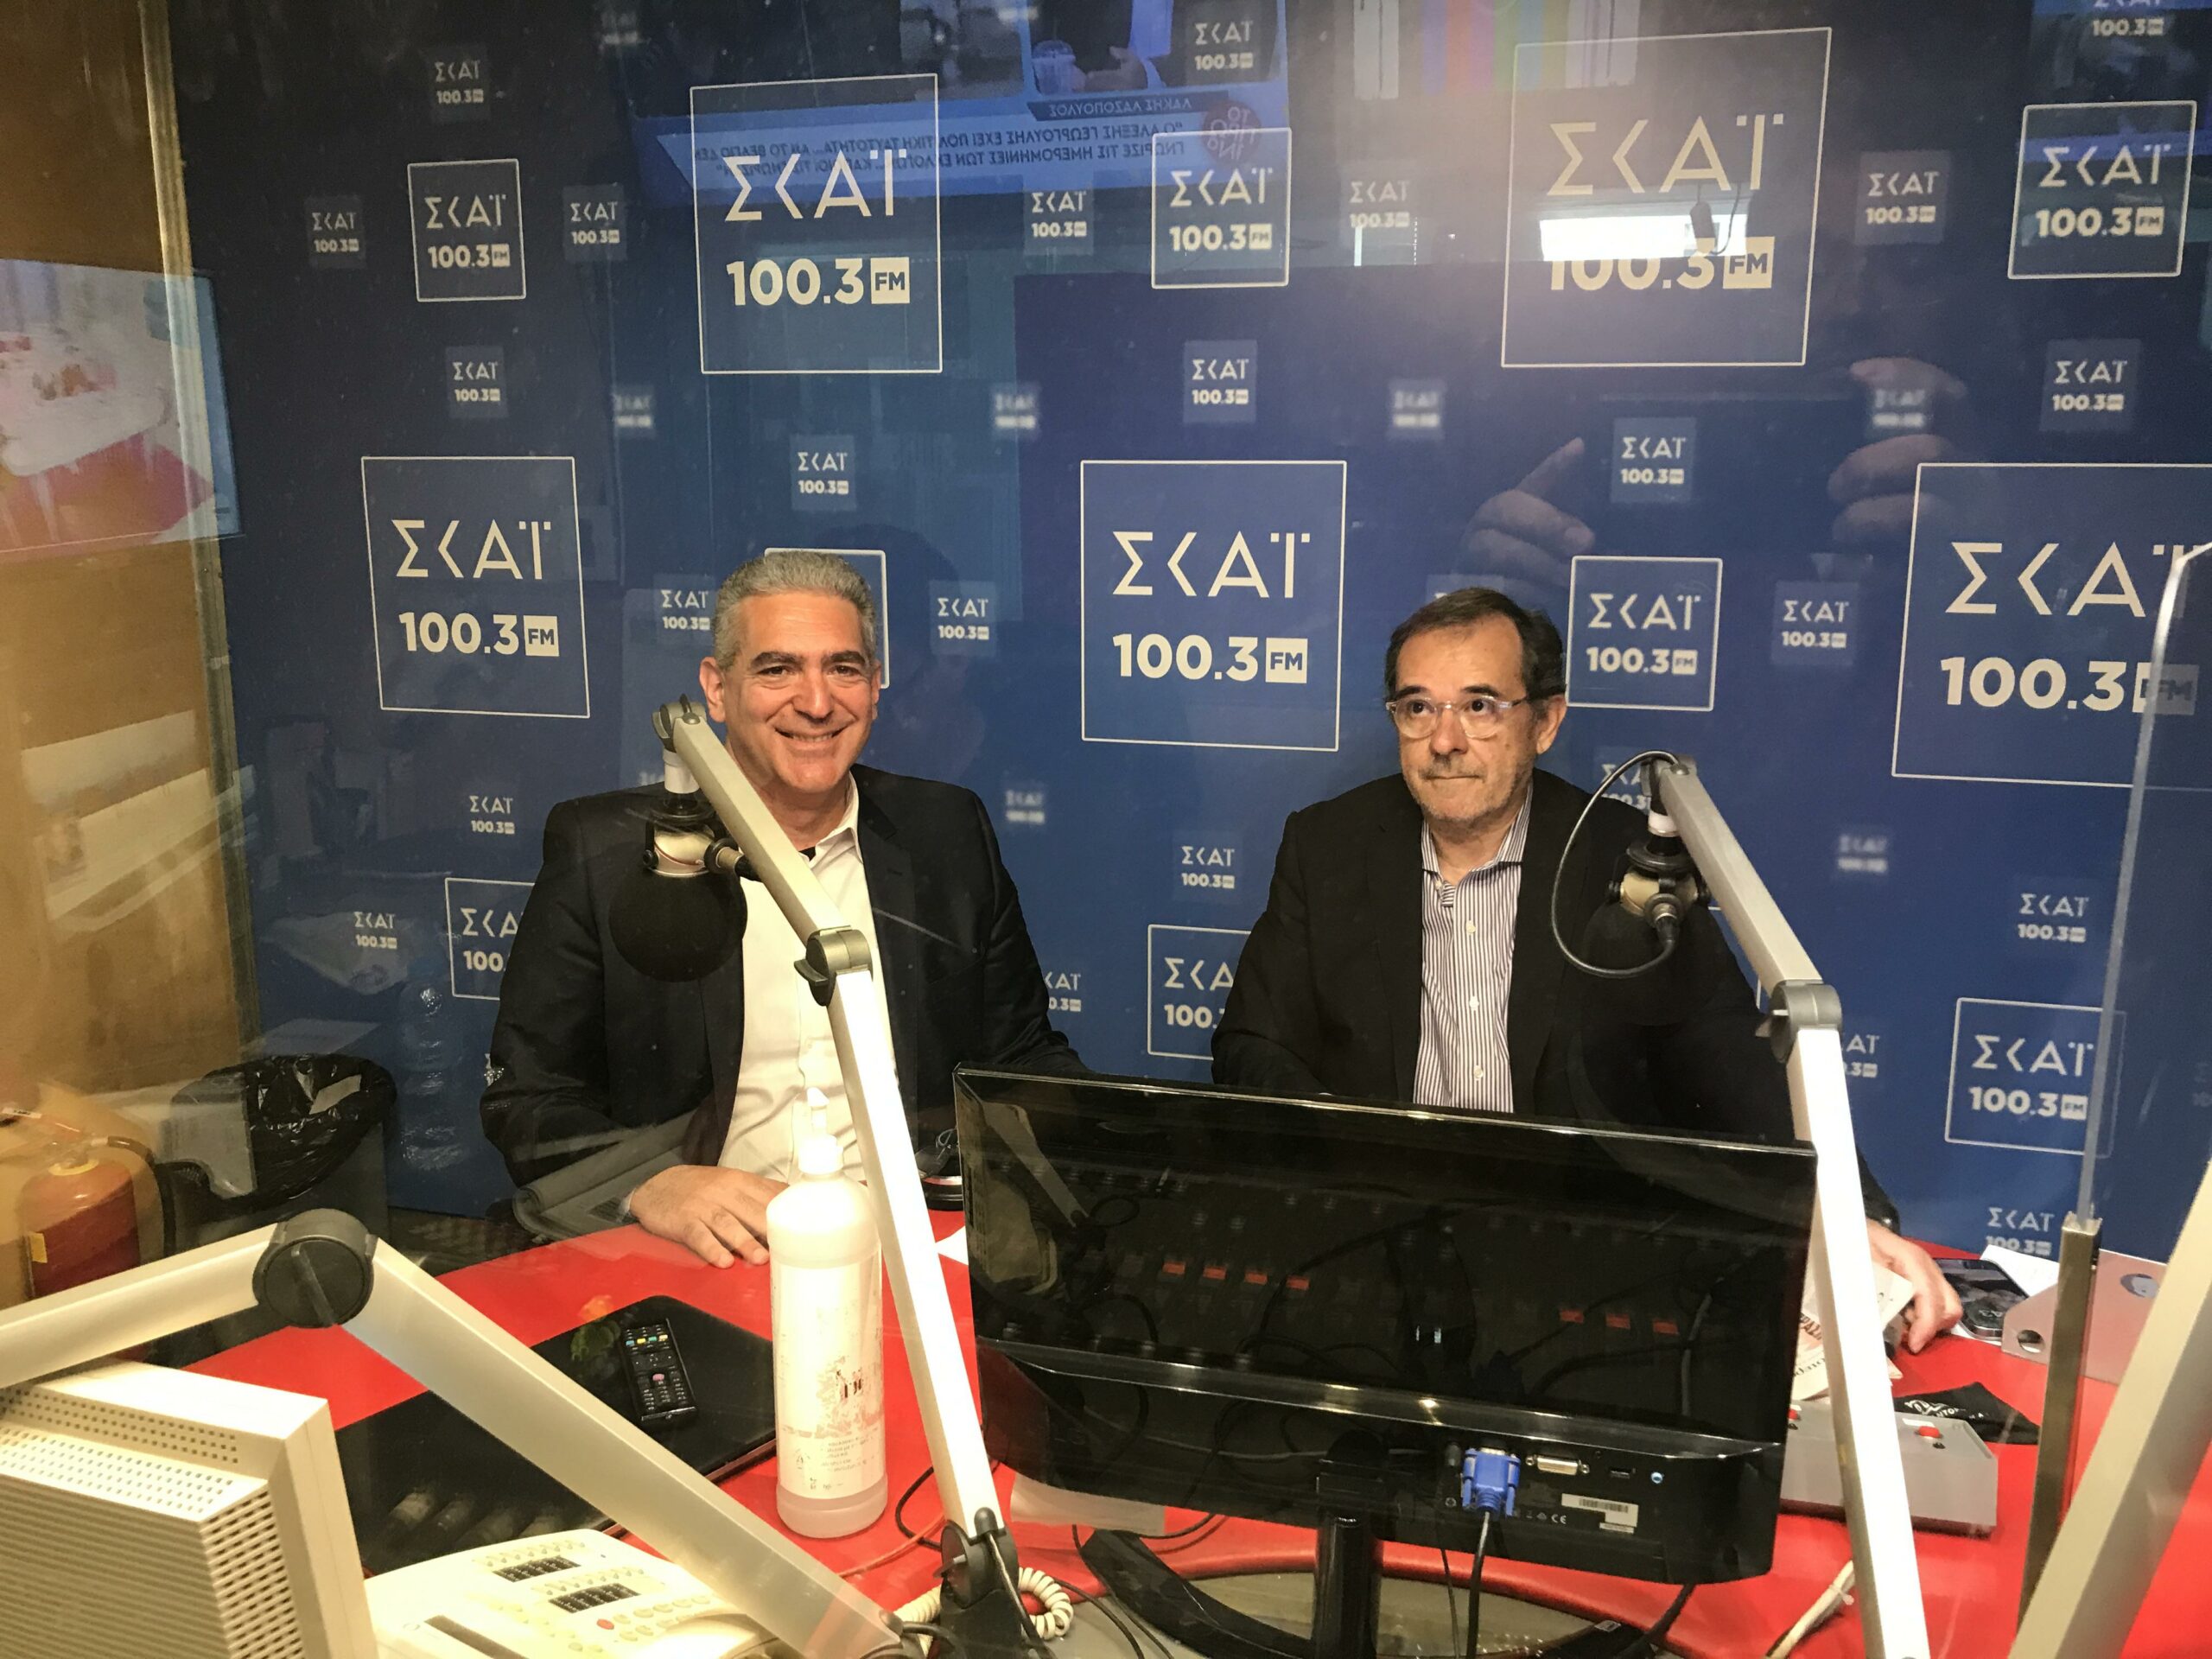 Υπ. βουλευτής Ροδόπης Θ. Κωφίδης: Είμαι πεπεισμένος ότι ο κ. Μητσοτάκης είναι ο ηγέτης που θα κάνει τη χώρα να μην έχει ανάγκη από ηγέτες